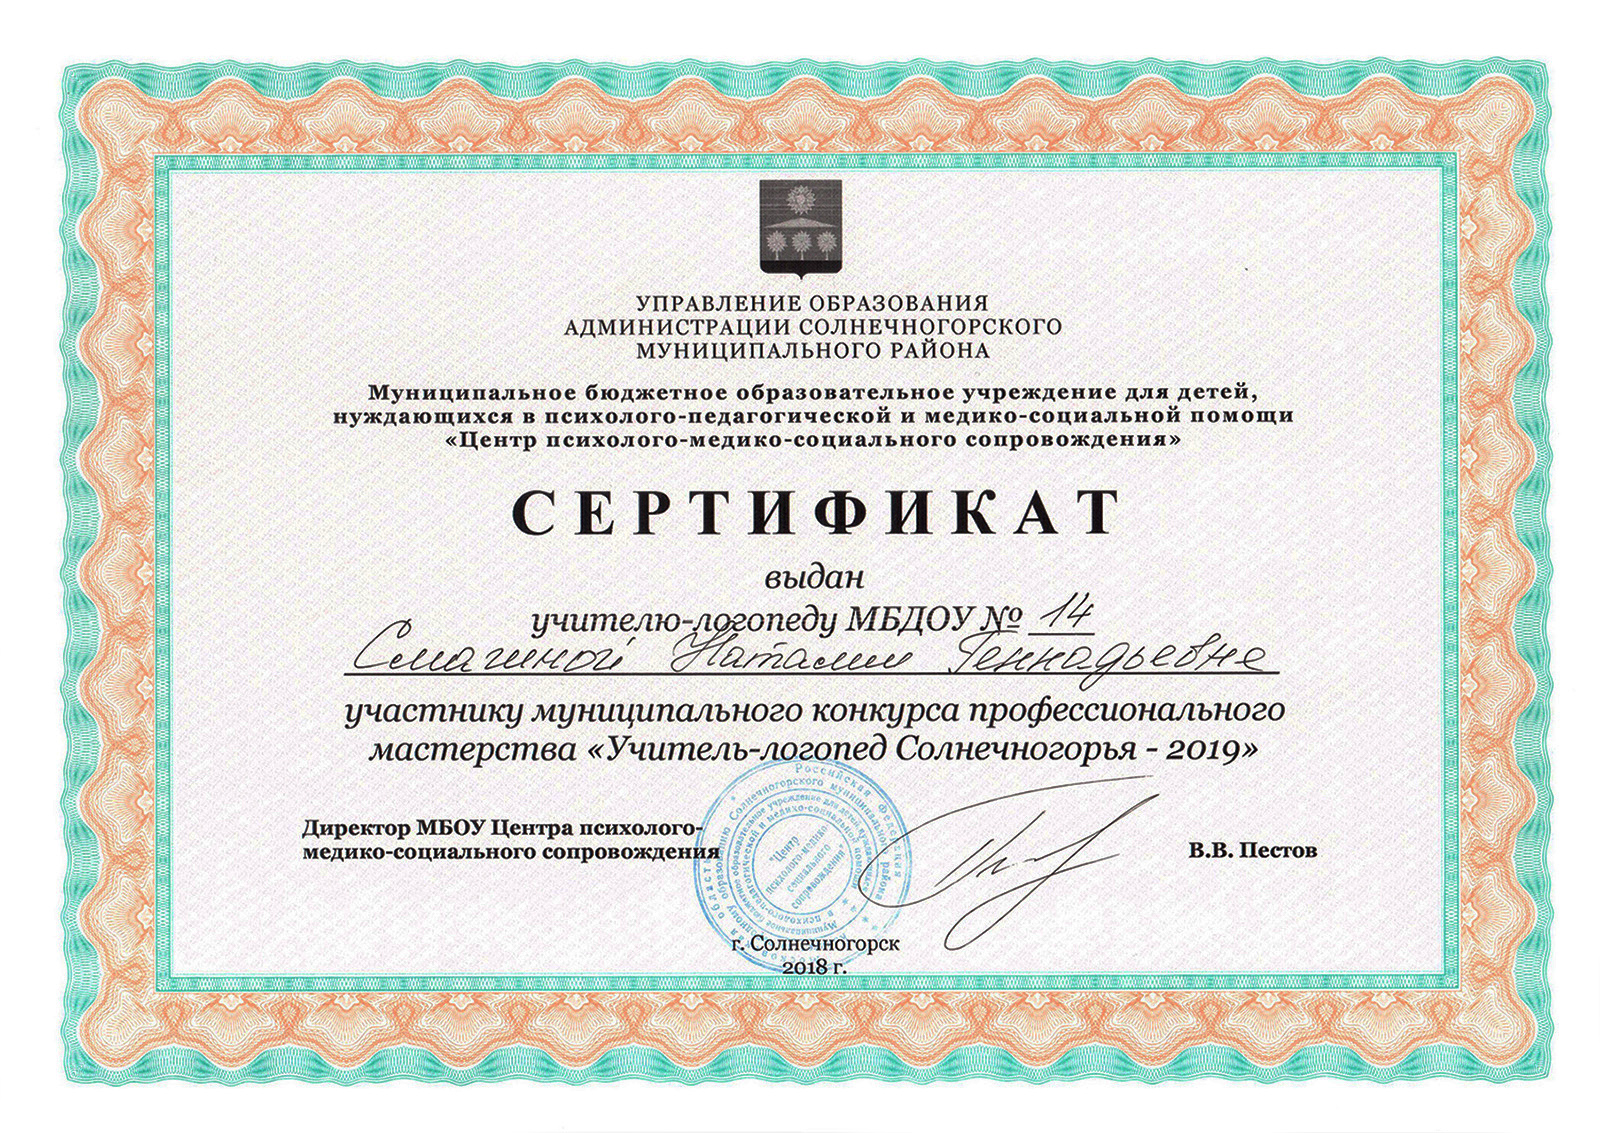 Сертификат участника конкурса